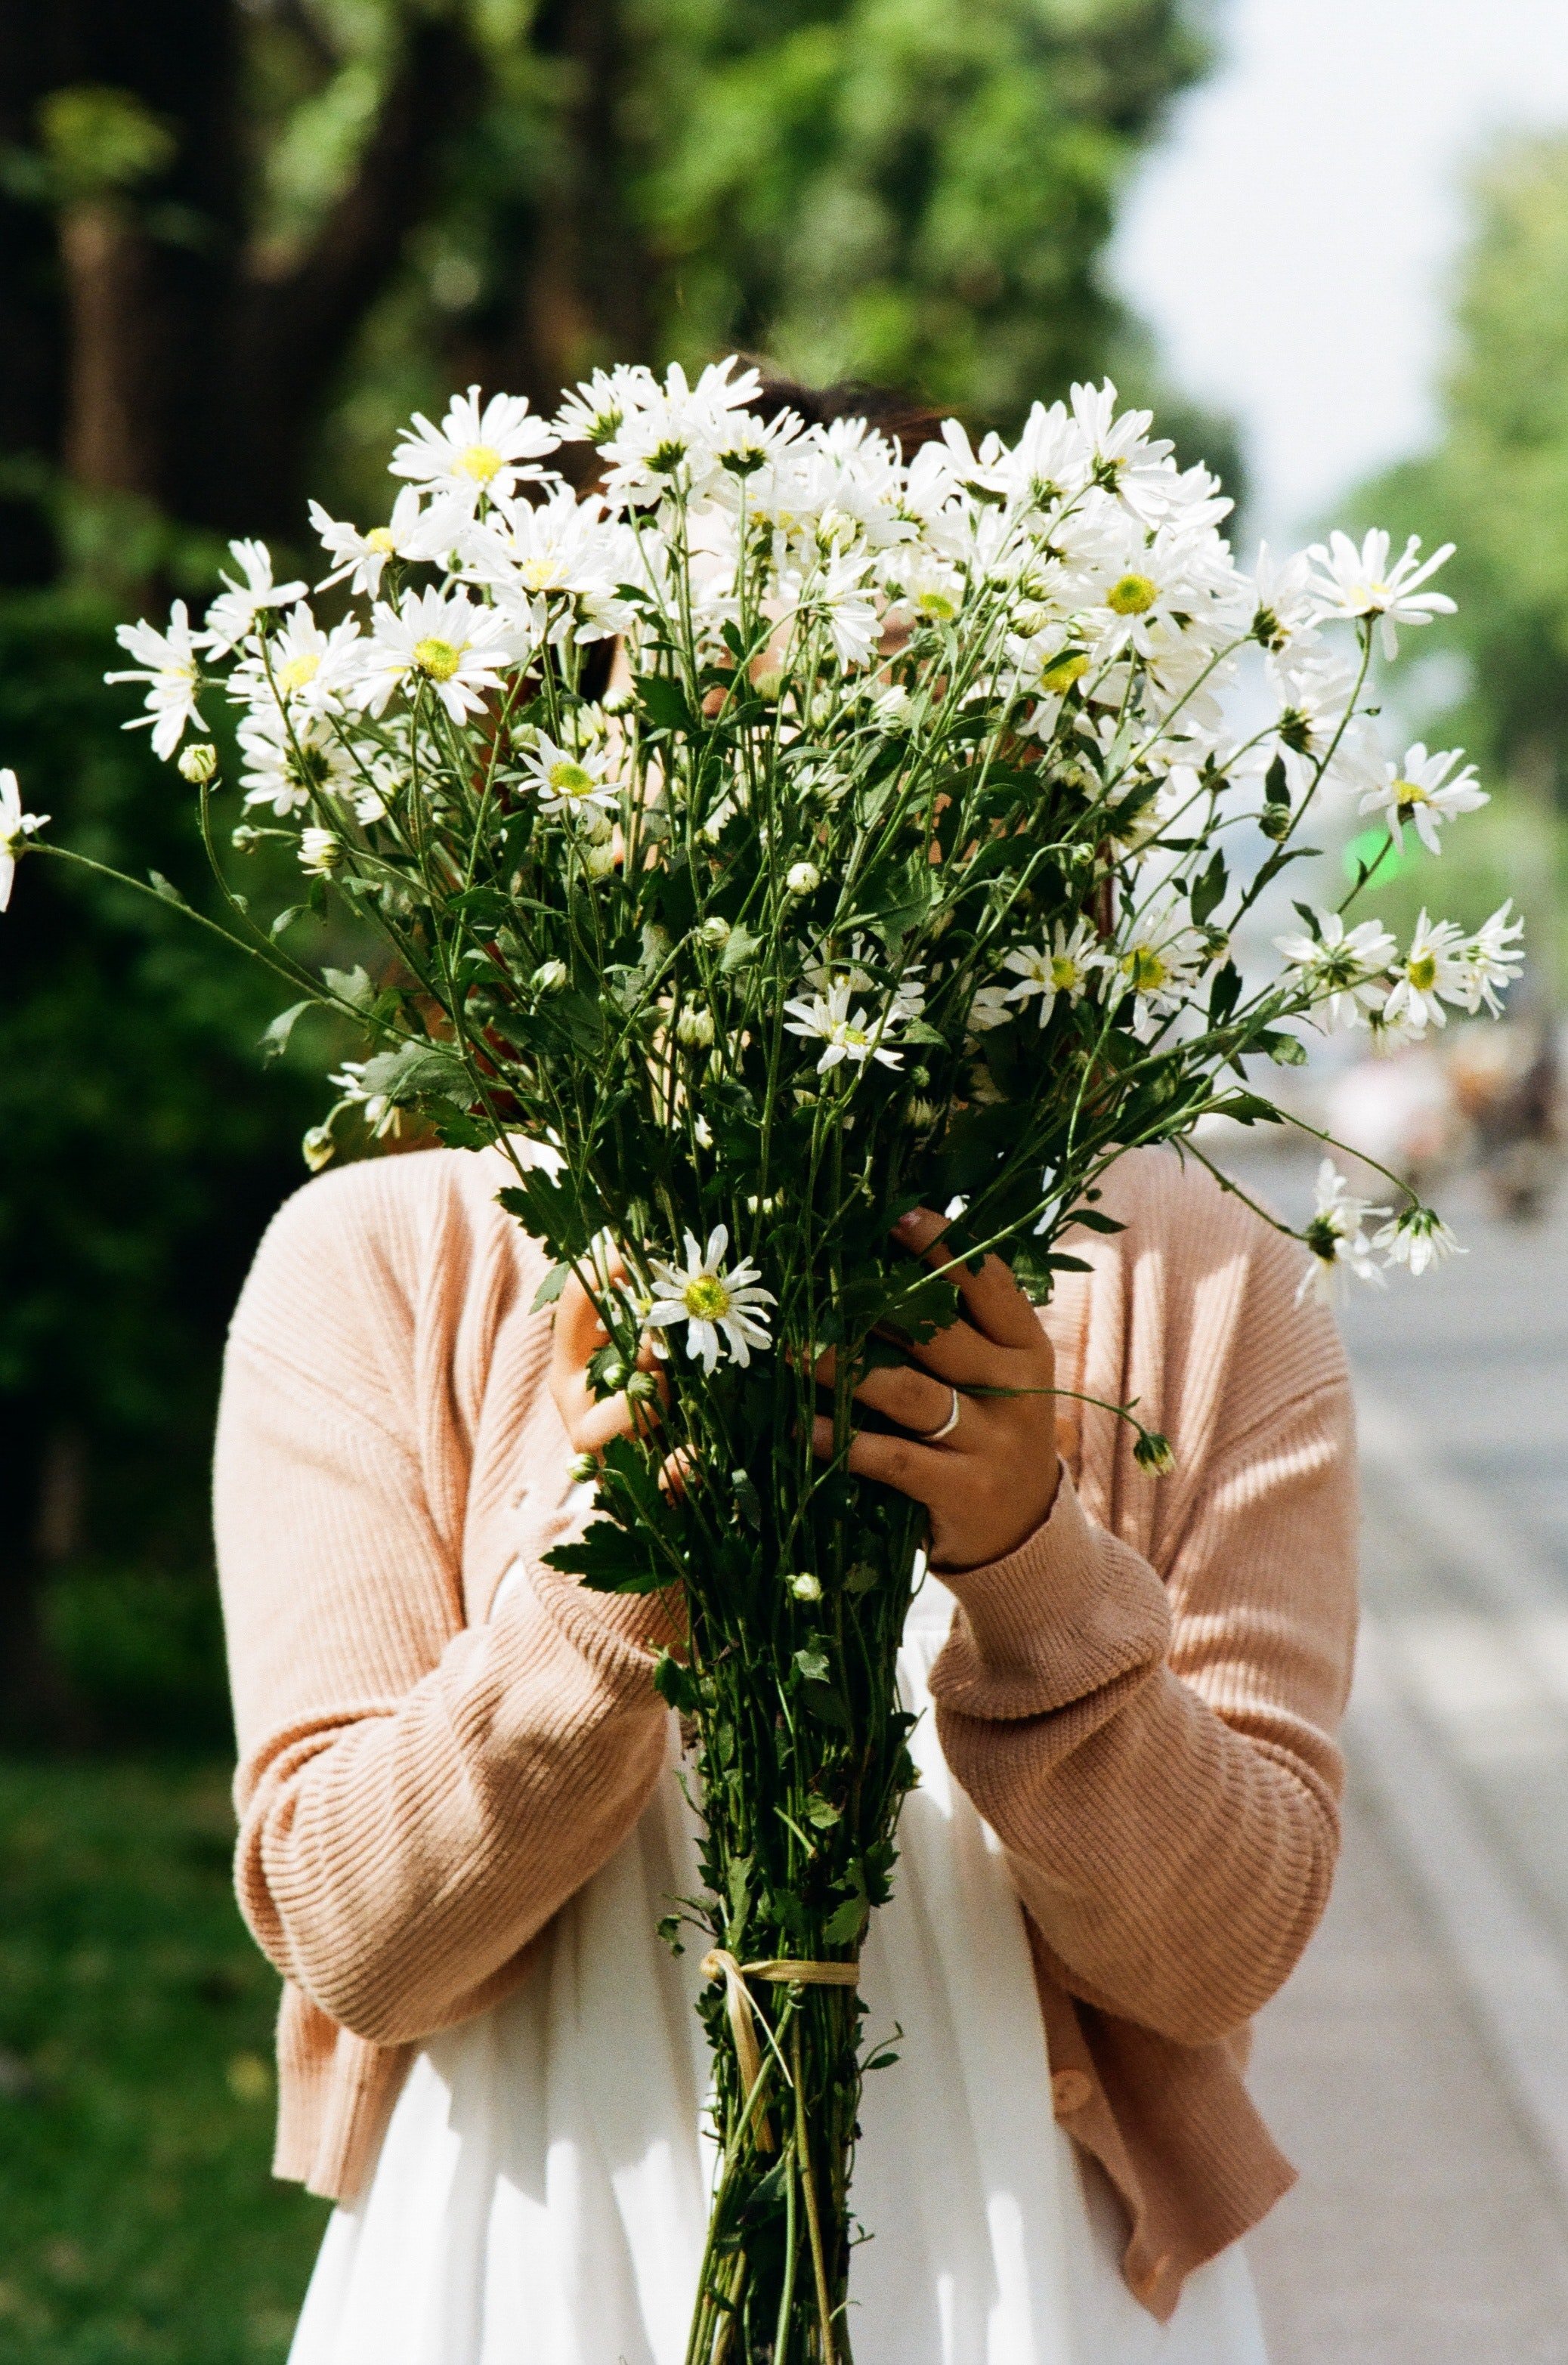 Samuel hat seine Frau vor ihrem Date mit Blumen überrascht. | Quelle: Pexels